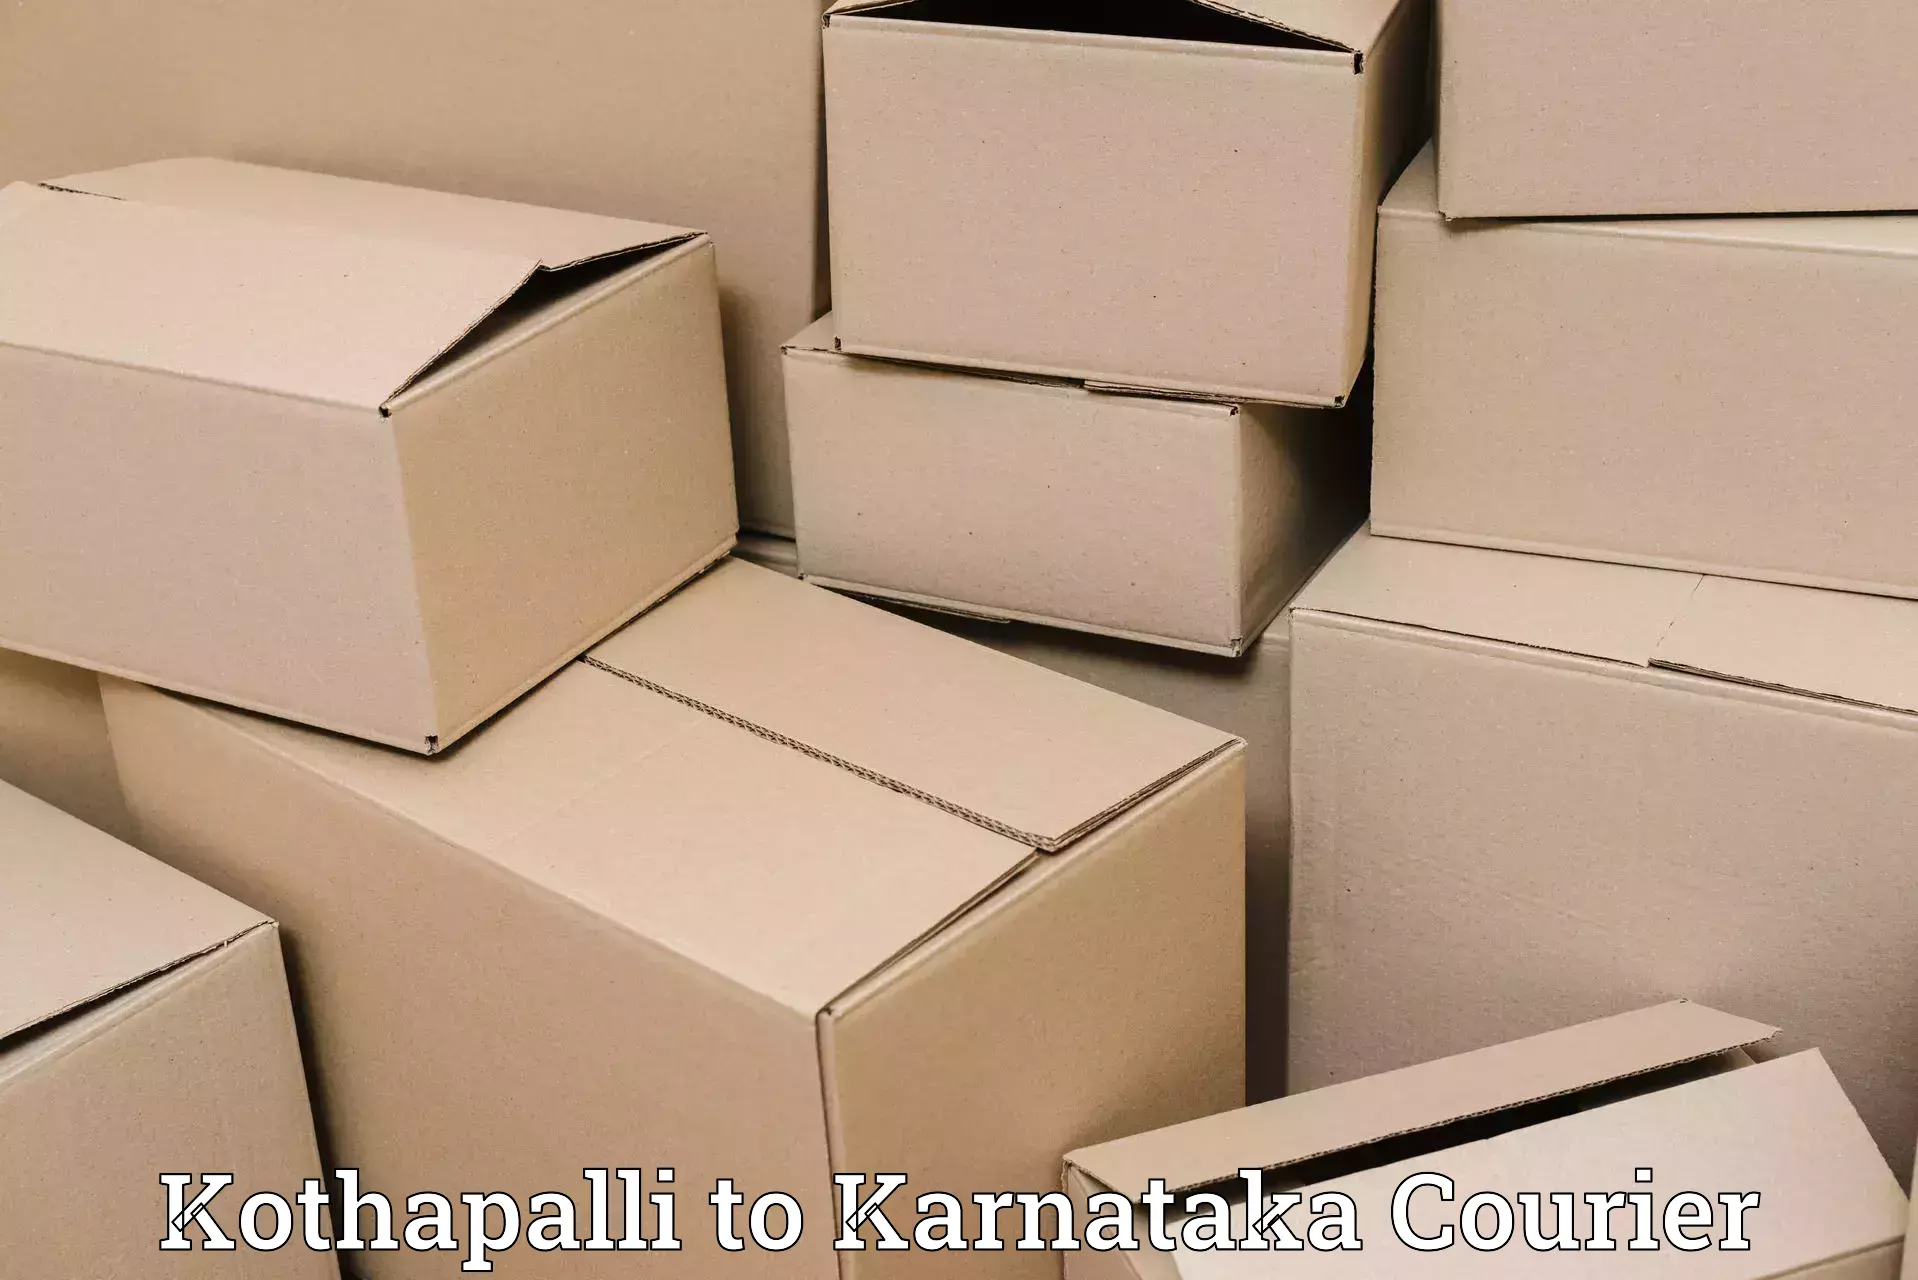 Premium courier services in Kothapalli to Heggadadevankote HD Kote